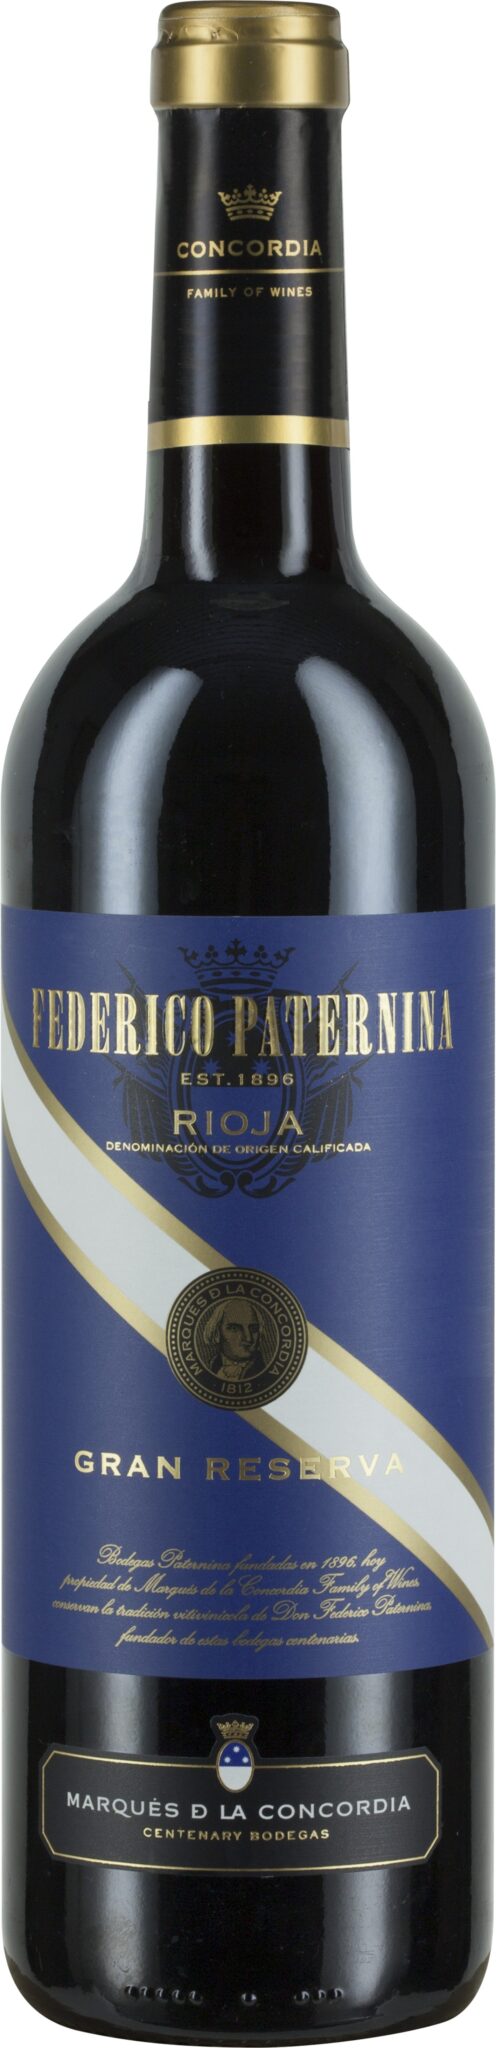 Federico Paternina, Rioja DOCa Gran Reserva